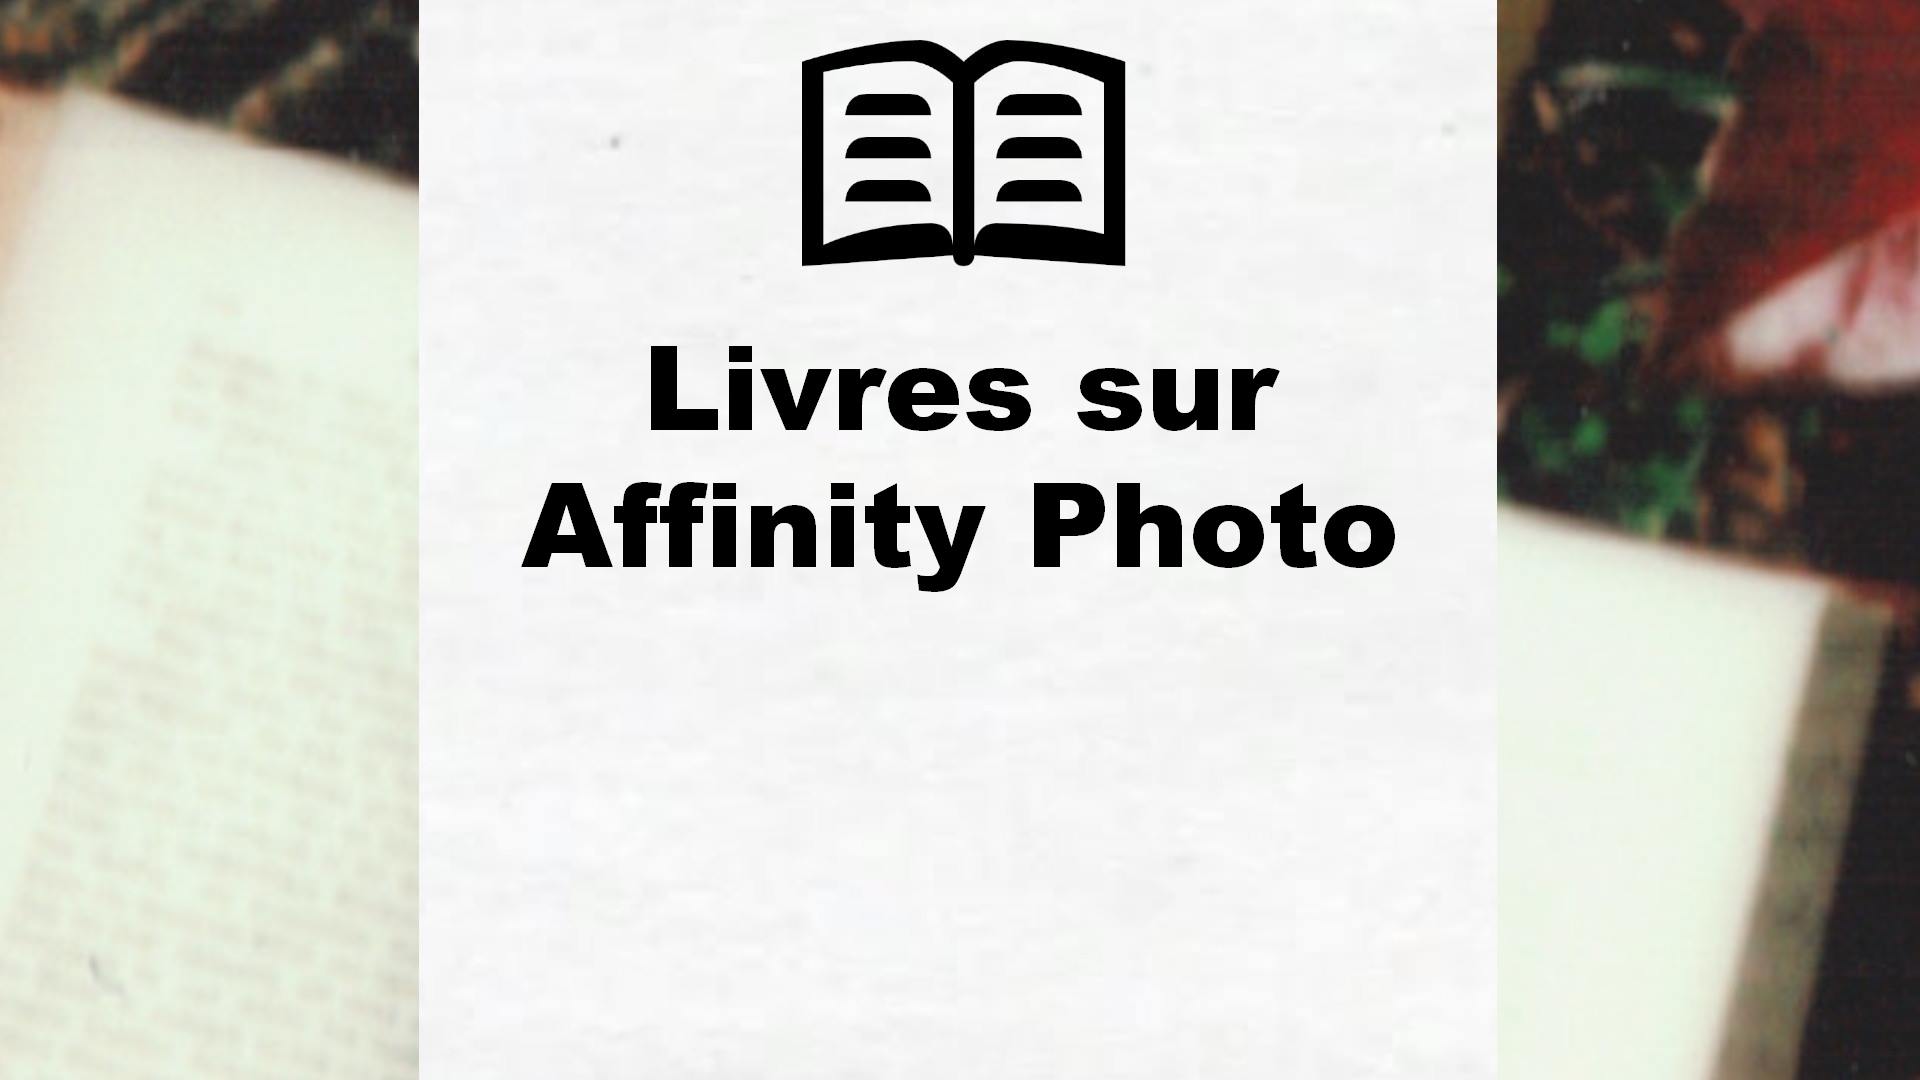 Livres sur Affinity Photo